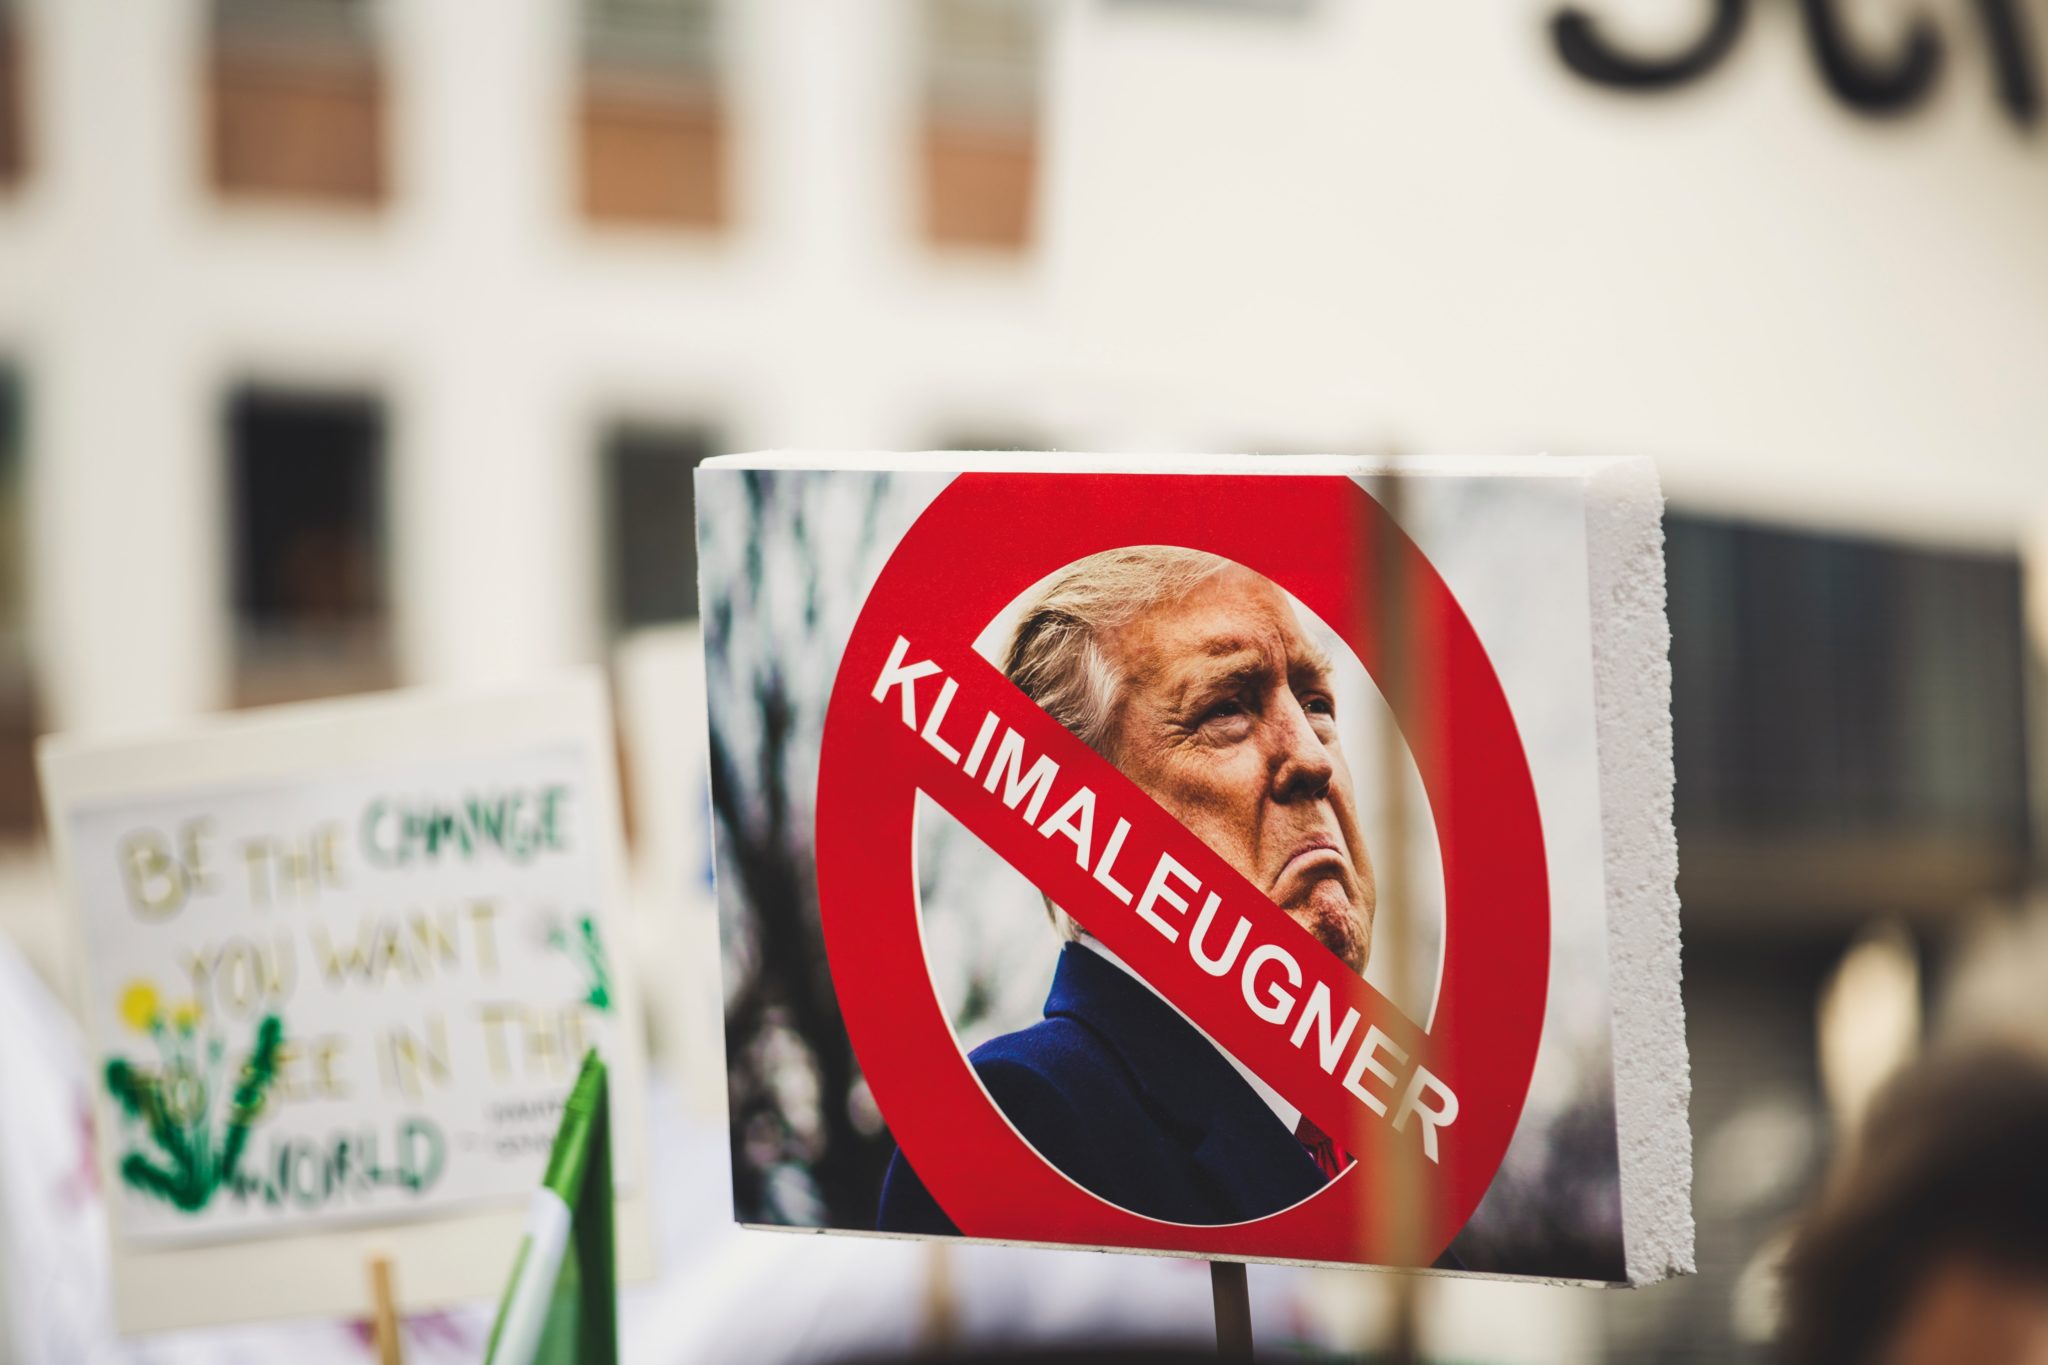 Ein Protestschild, auf dem Trumps Gesicht zu sehen ist, über dem ein rotes Warnschild mit der Schrift "Klimaleugner" gedruckt ist."